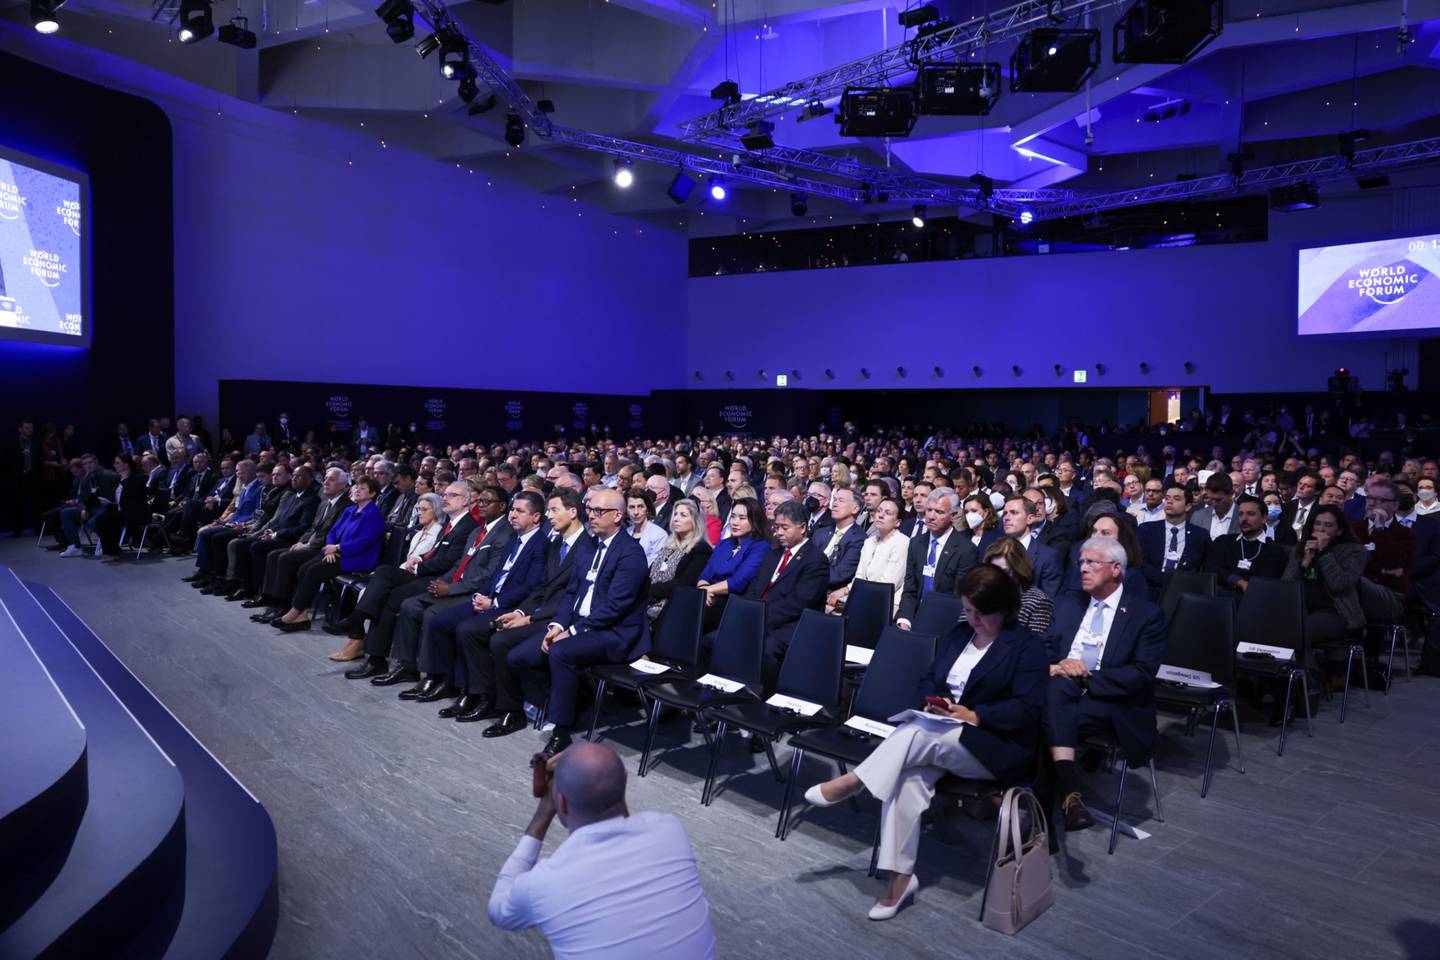 O encontro de líderes políticos, altos executivos e celebridades acontece de 22 a 26 de maio em Davos, na Suíçadfd